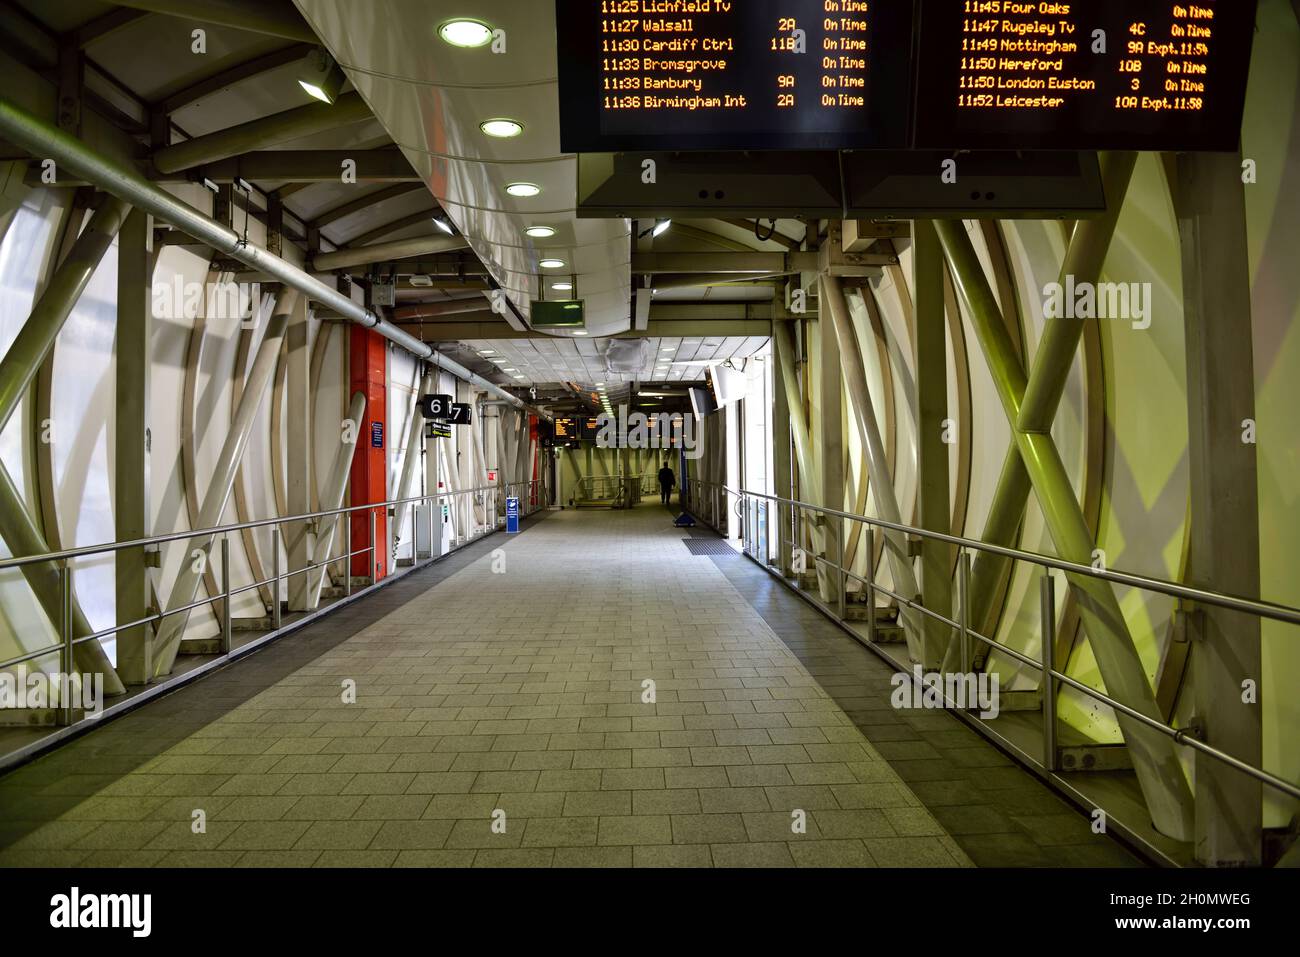 Passerella coperta, passerella recintata, stazione ferroviaria, Birmingham, stazione di New Street, REGNO UNITO Foto Stock